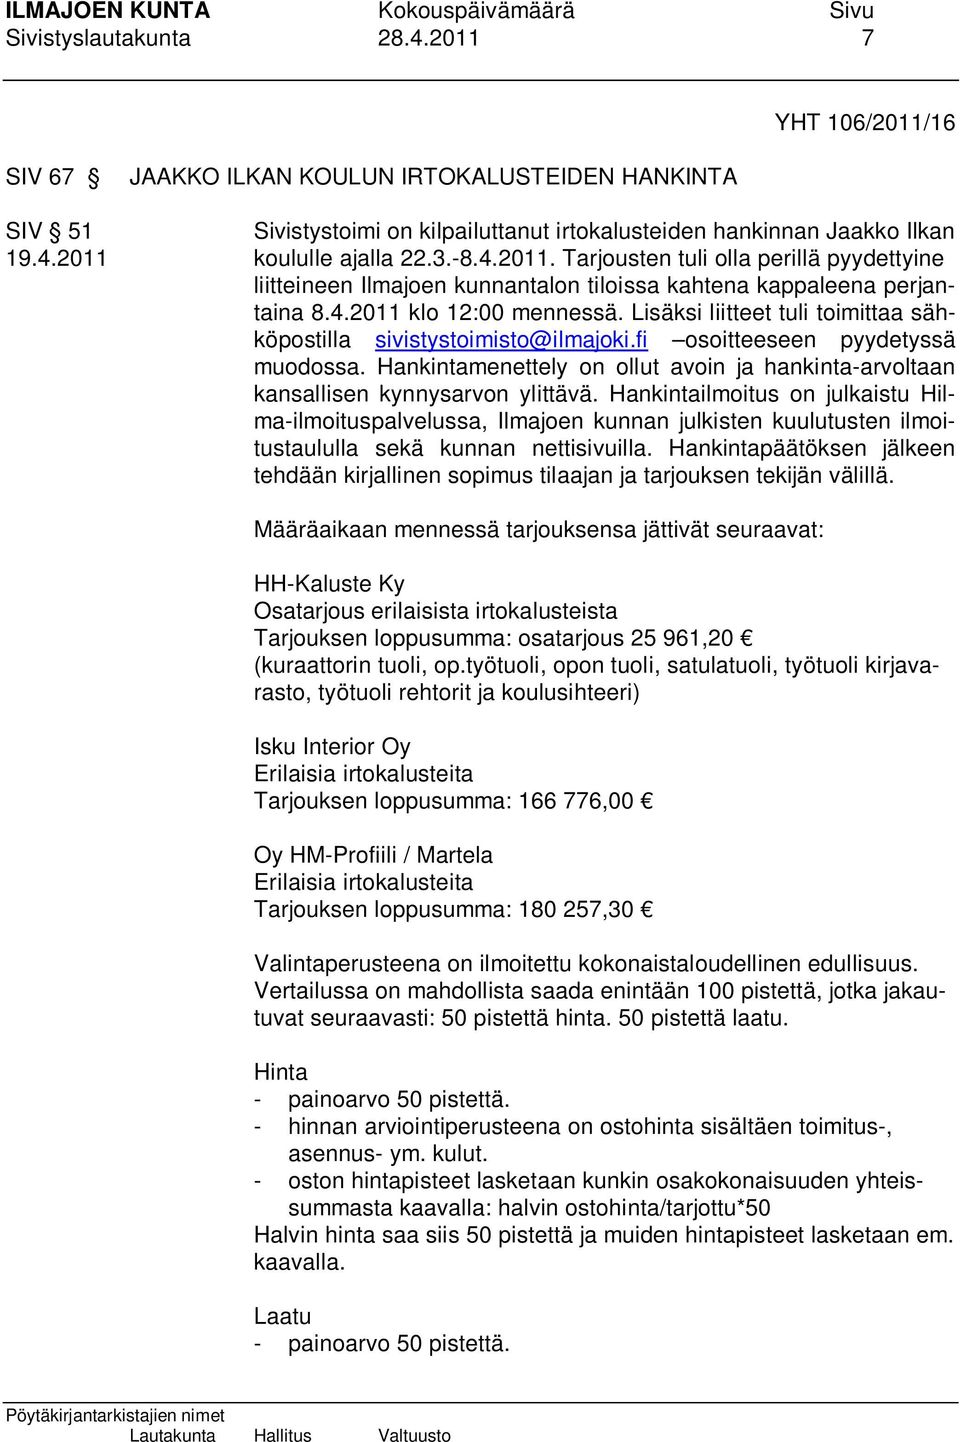 Lisäksi liitteet tuli toimittaa sähköpostilla sivistystoimisto@ilmajoki.fi osoitteeseen pyydetyssä muodossa. Hankintamenettely on ollut avoin ja hankinta-arvoltaan kansallisen kynnysarvon ylittävä.